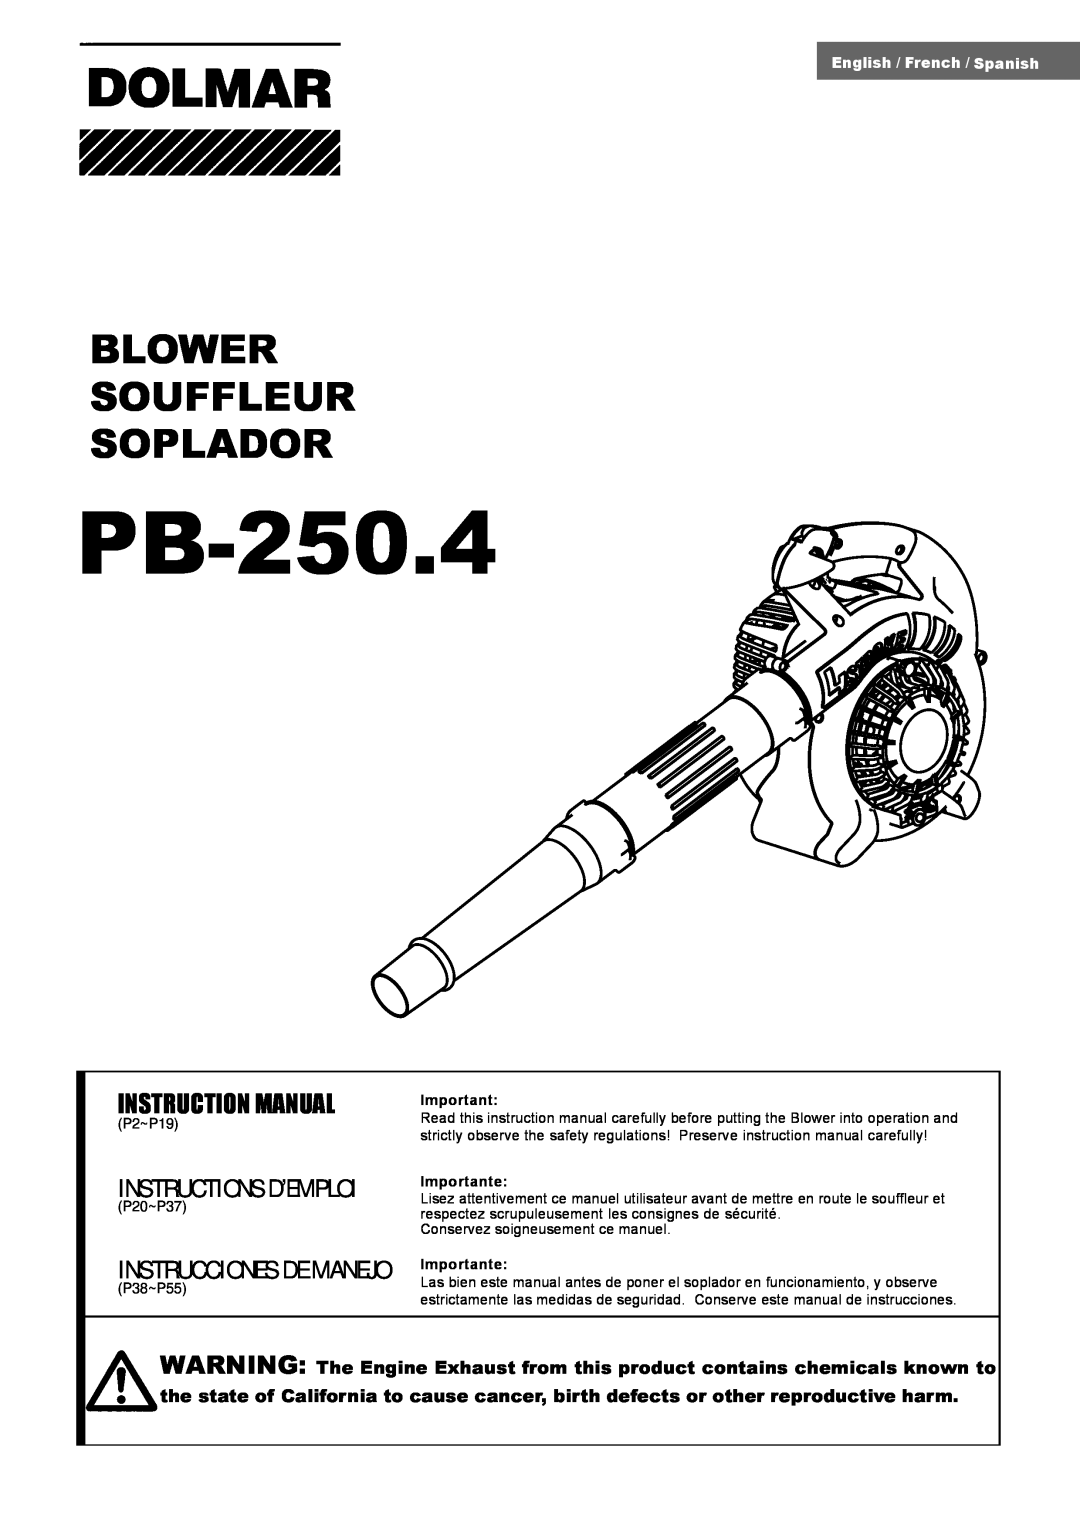 Dolmar PB-250.4 instruction manual Blower Souffleur Soplador, Instructions D’Emploi, Instrucciones De Manejo 